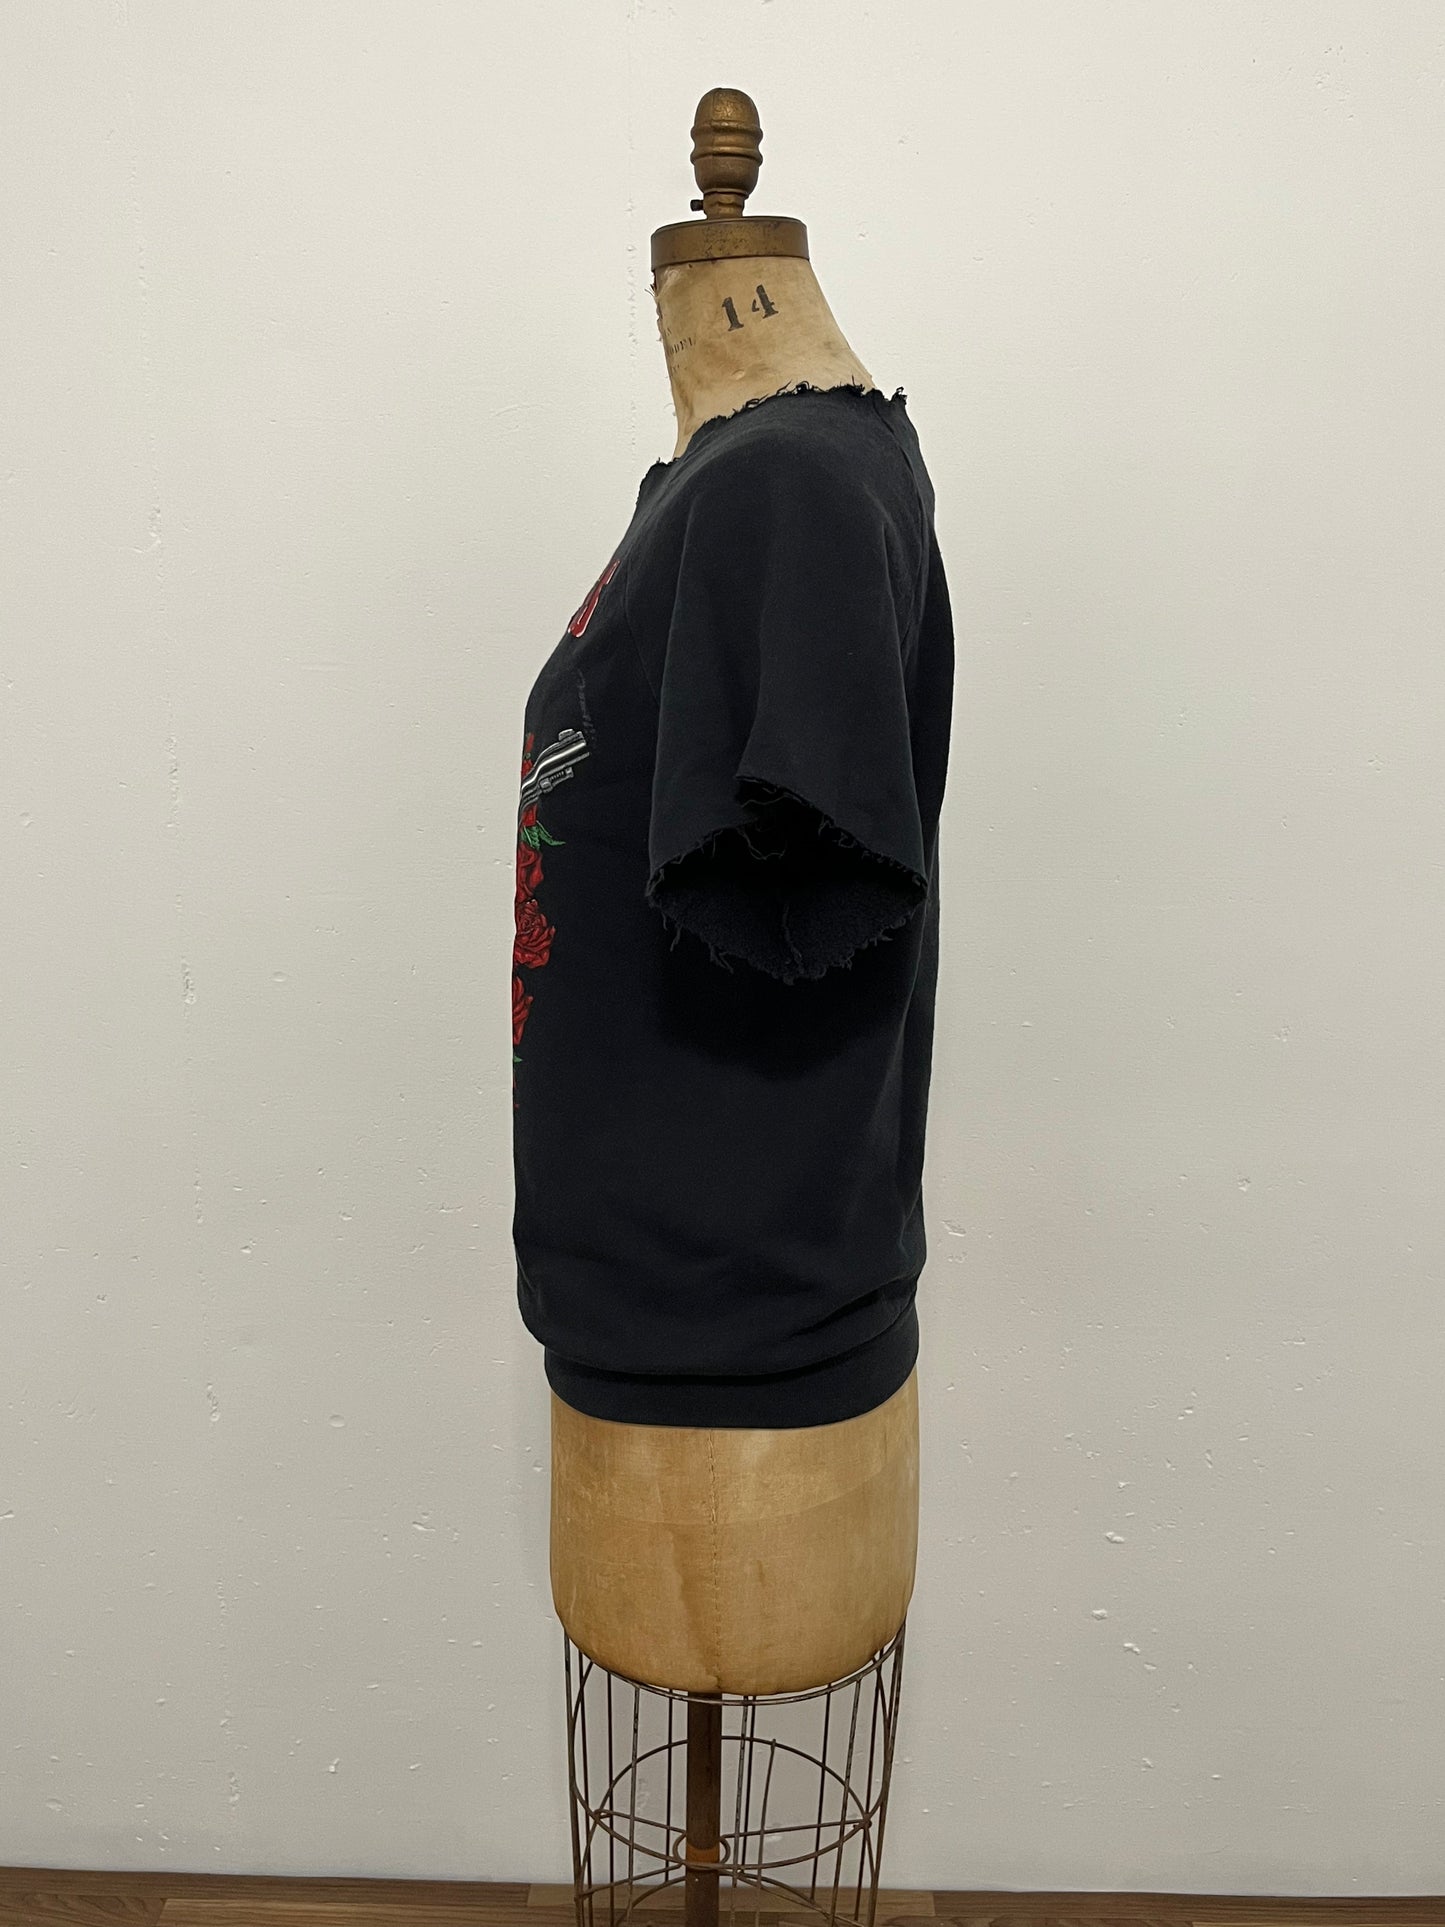 1989 Guns & Roses Cuttoff Sweatshirt